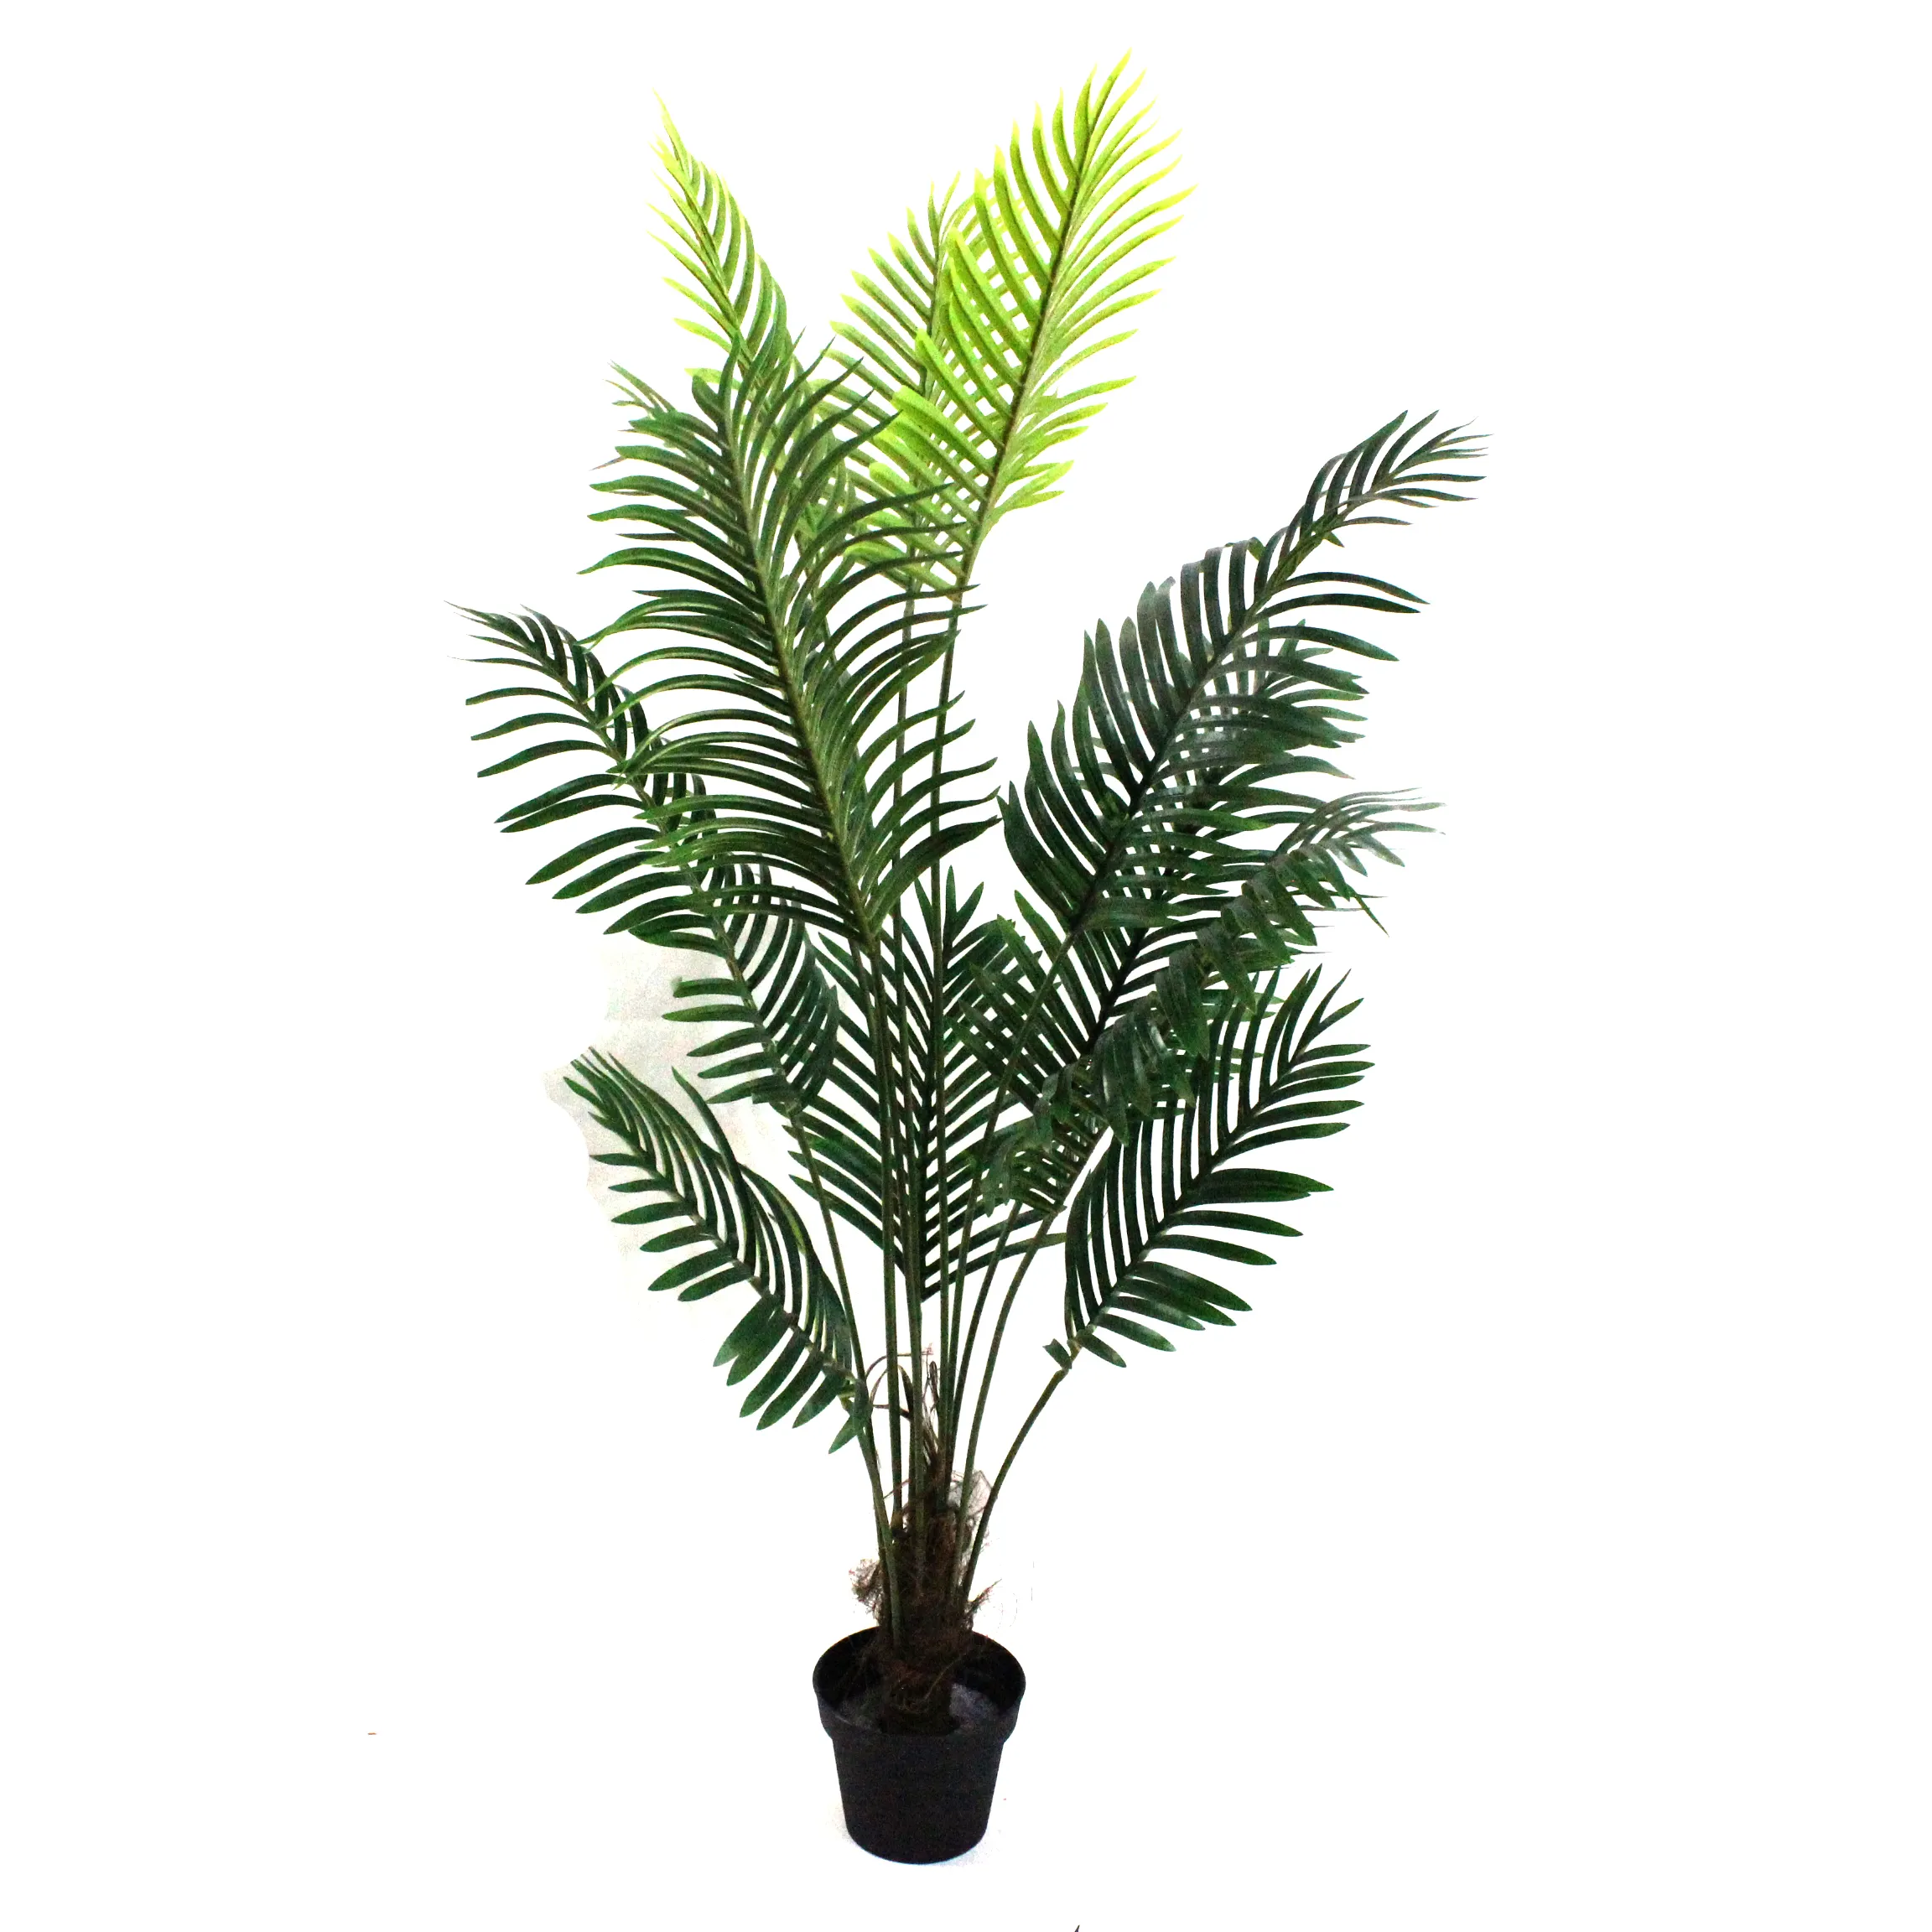 Nuovo stile 5ft 6ft piante in vaso di palma kwai 150 centimetri 160 centimetri 180 centimetri di palma artificiale foglie di albero bonsai pianta